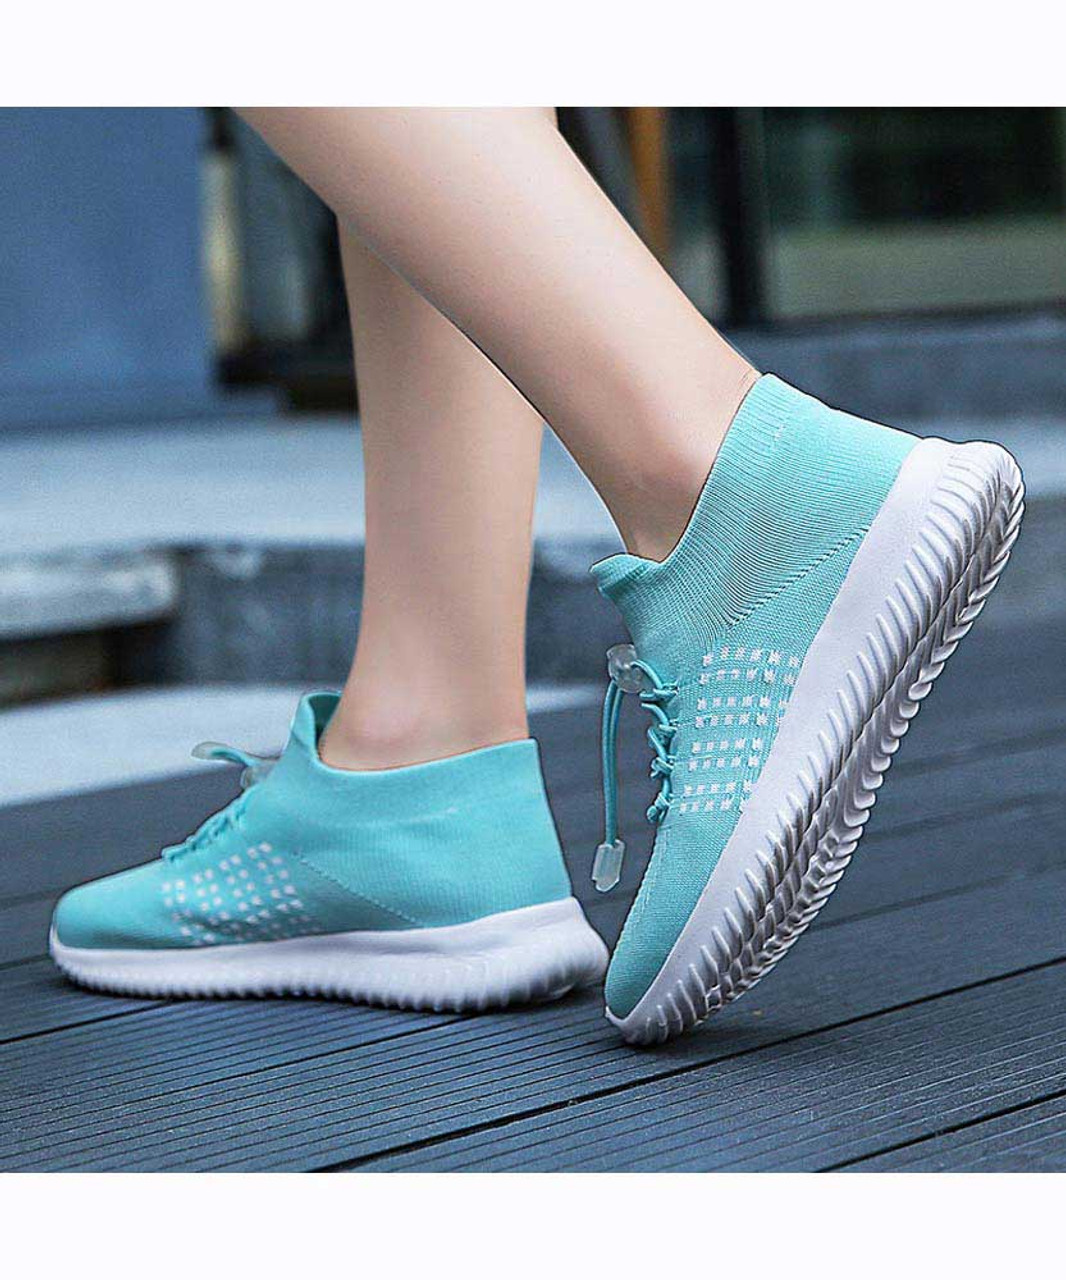 Green blue flyknit dot pattern sock like fit shoe sneaker | Womens shoe ...